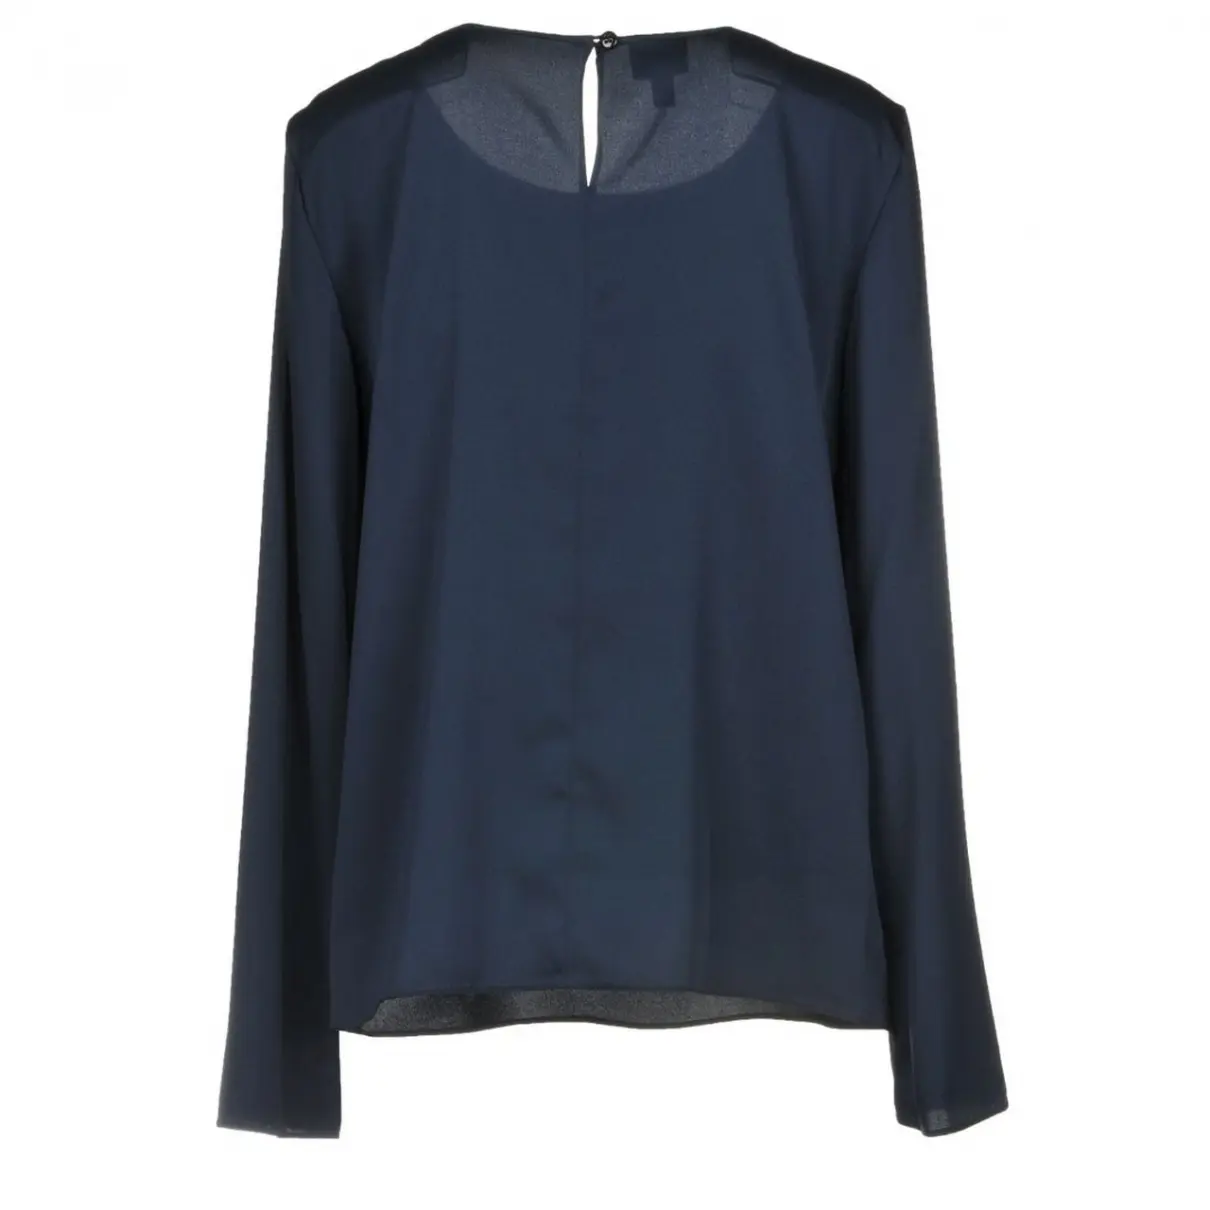 Buy Armani Collezioni Silk blouse online